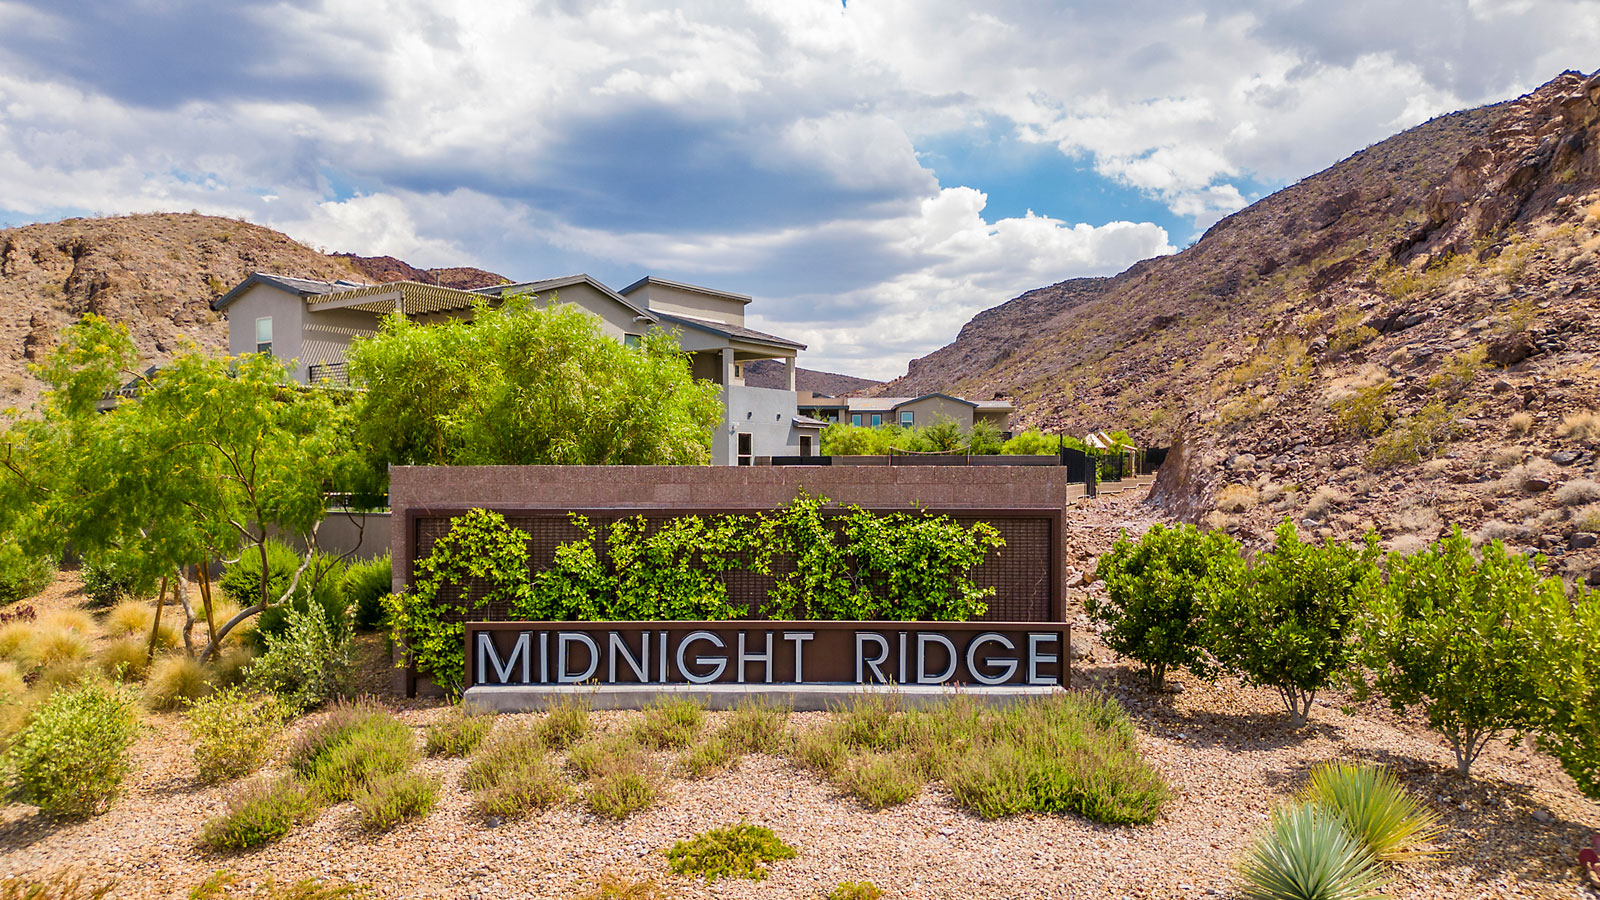 Midnight Ridge